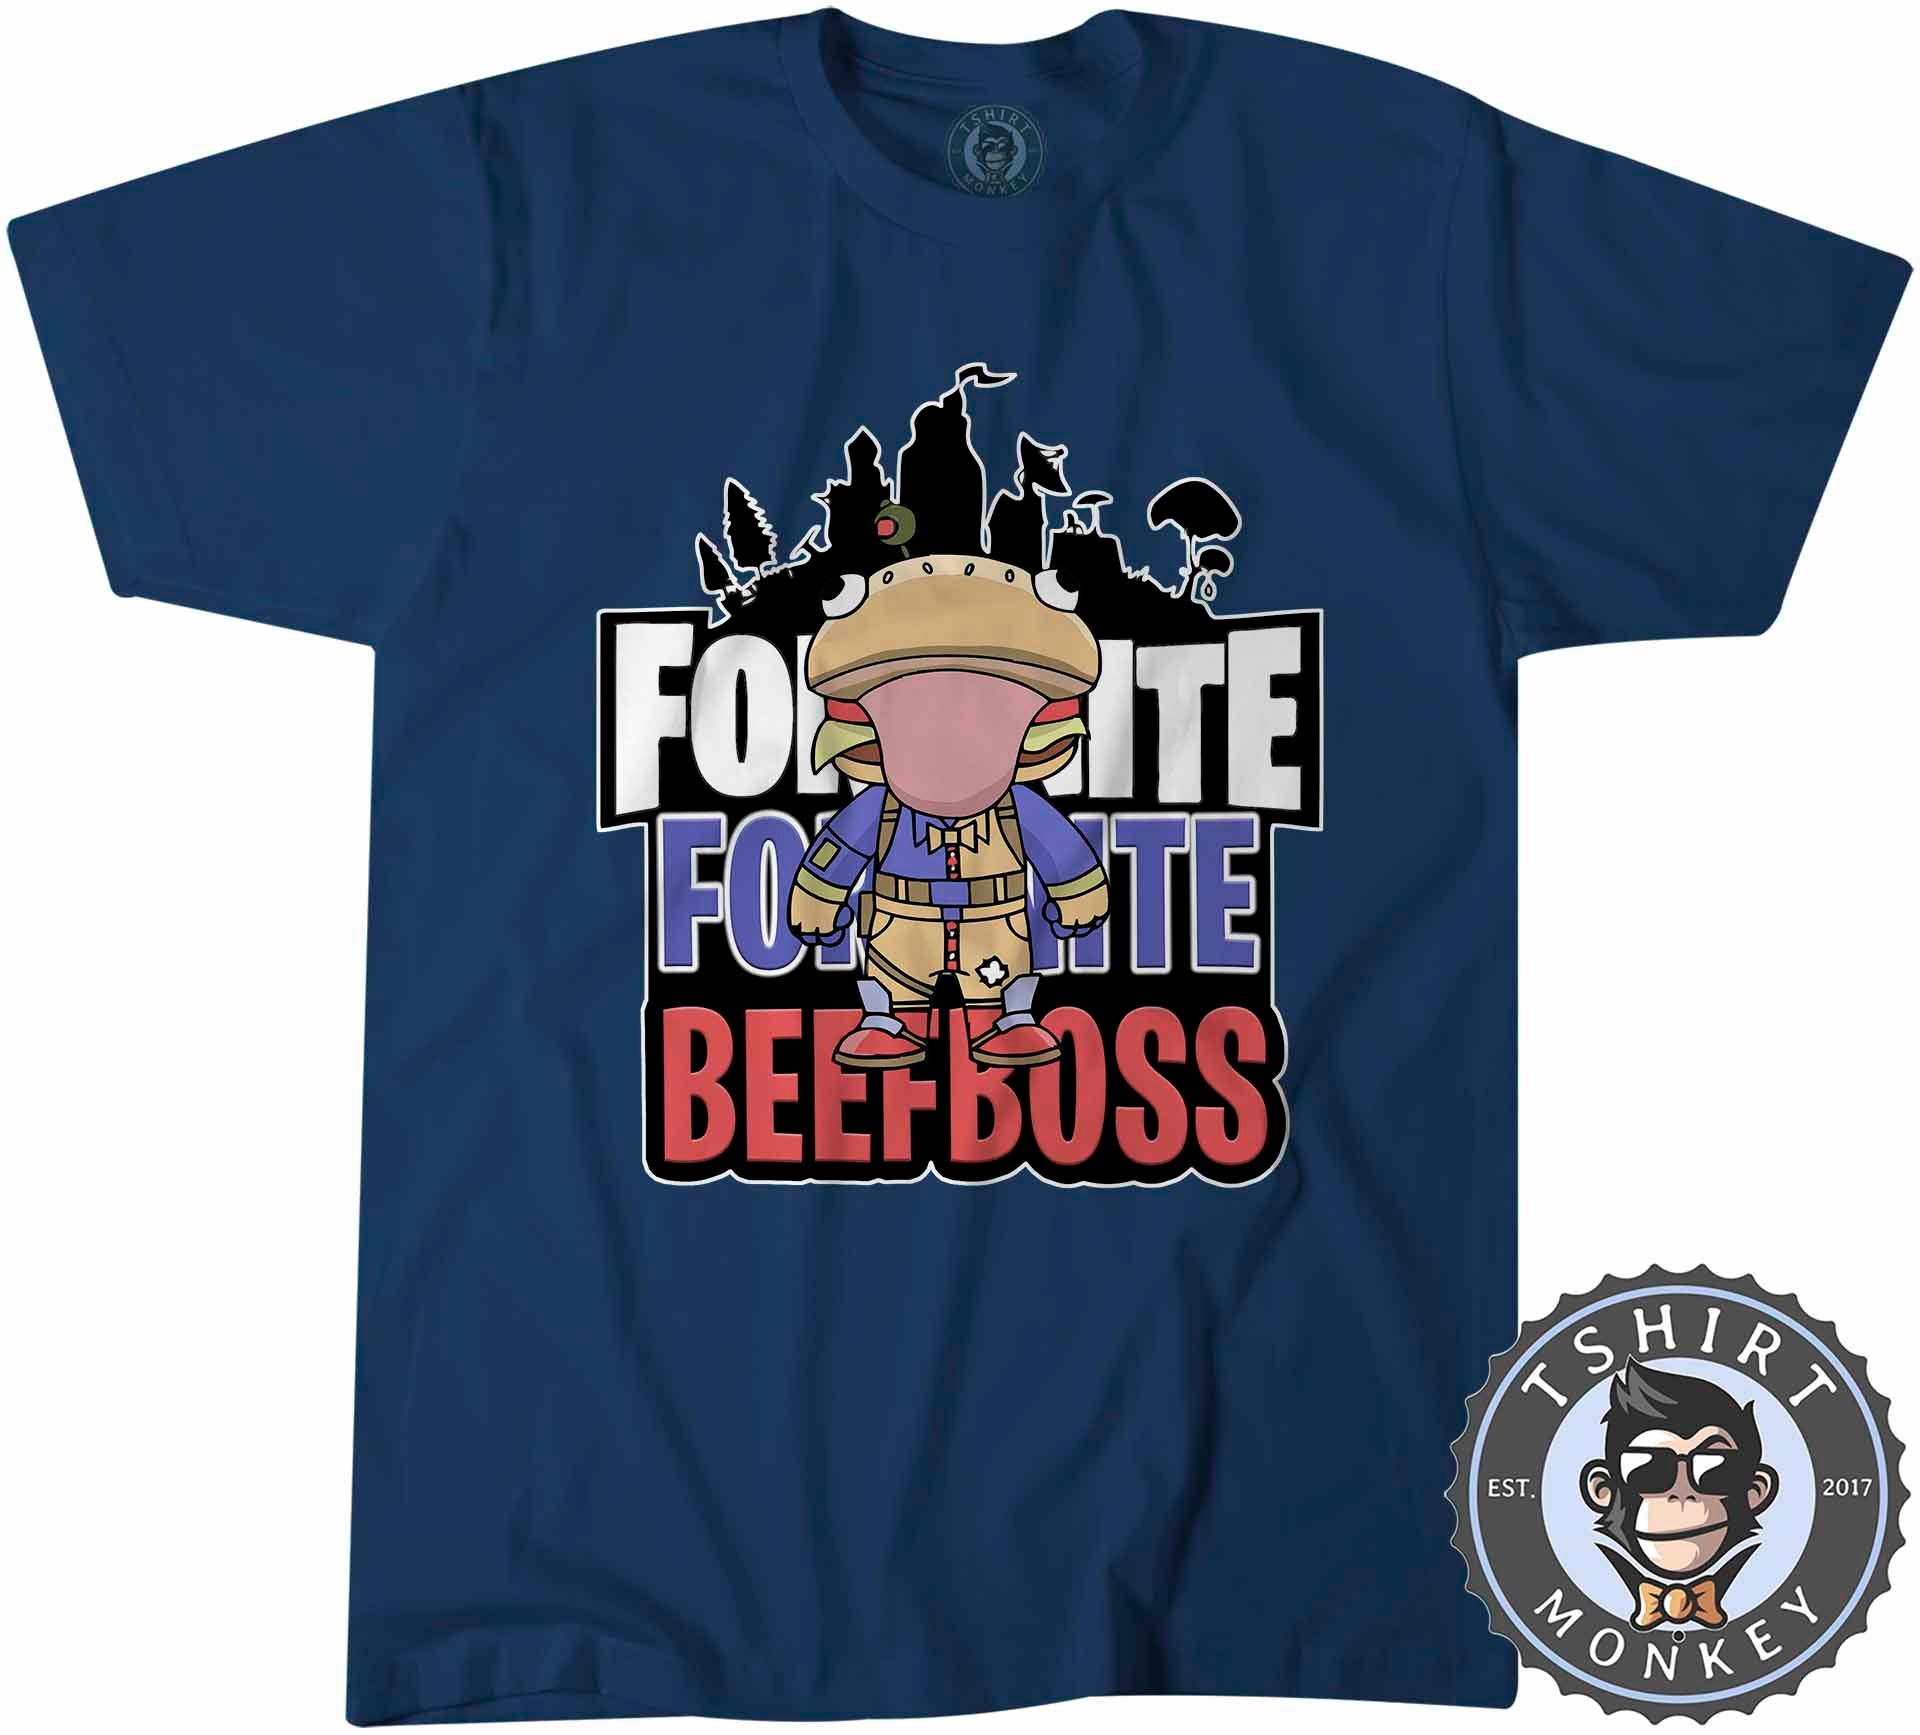 beef boss t shirt